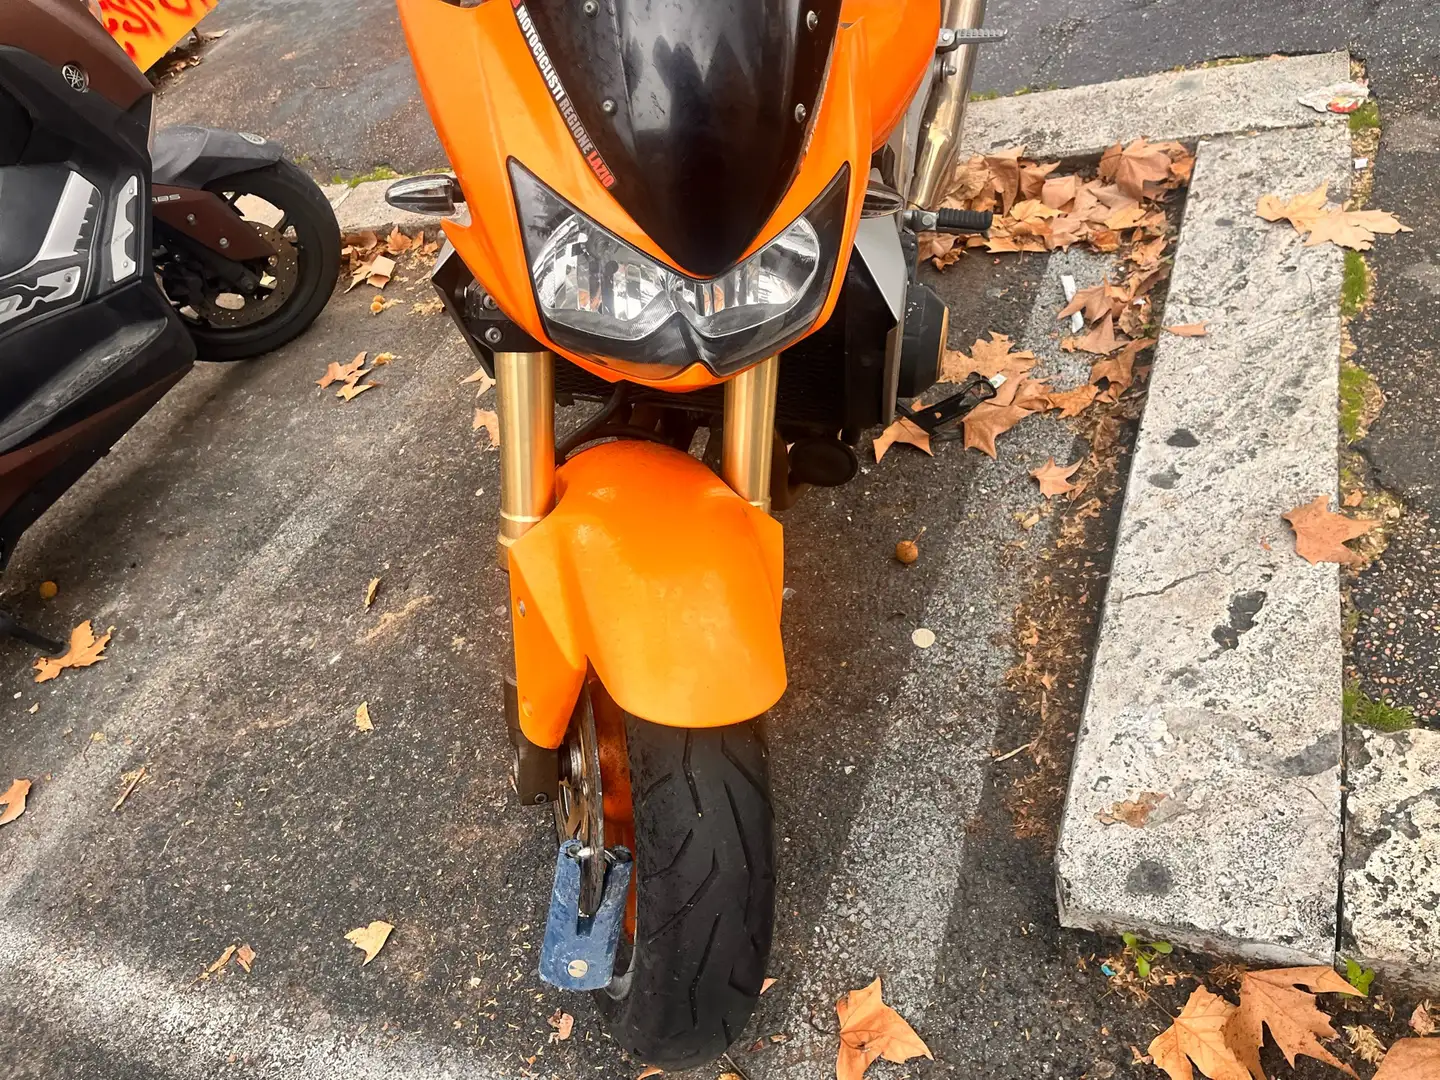 Kawasaki Z 1000 Arancione - 1